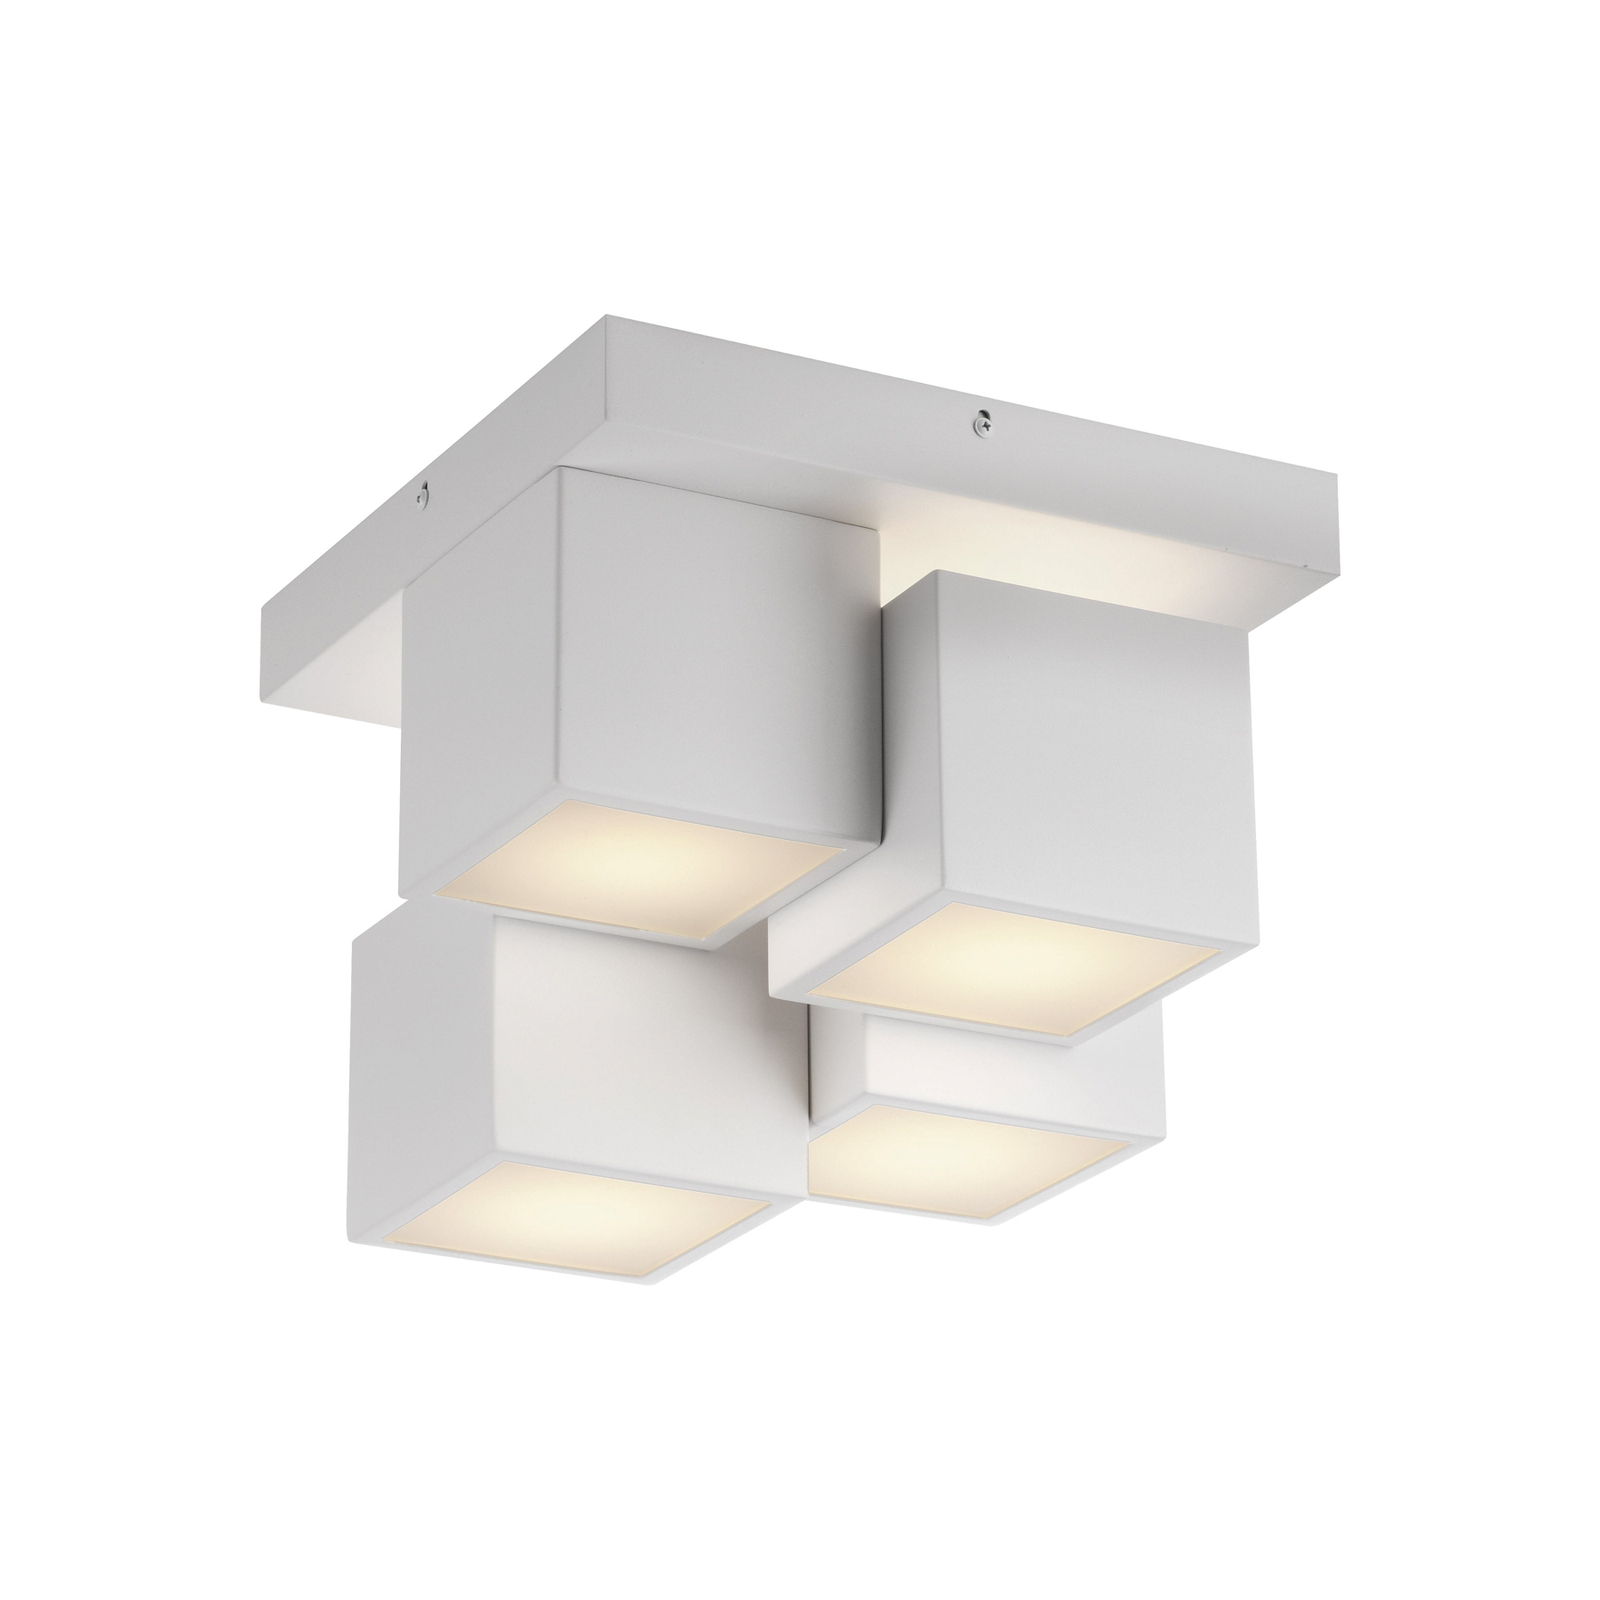 JUST LIGHT. LED ceiling light Tetris, iron, 3,000 K, white